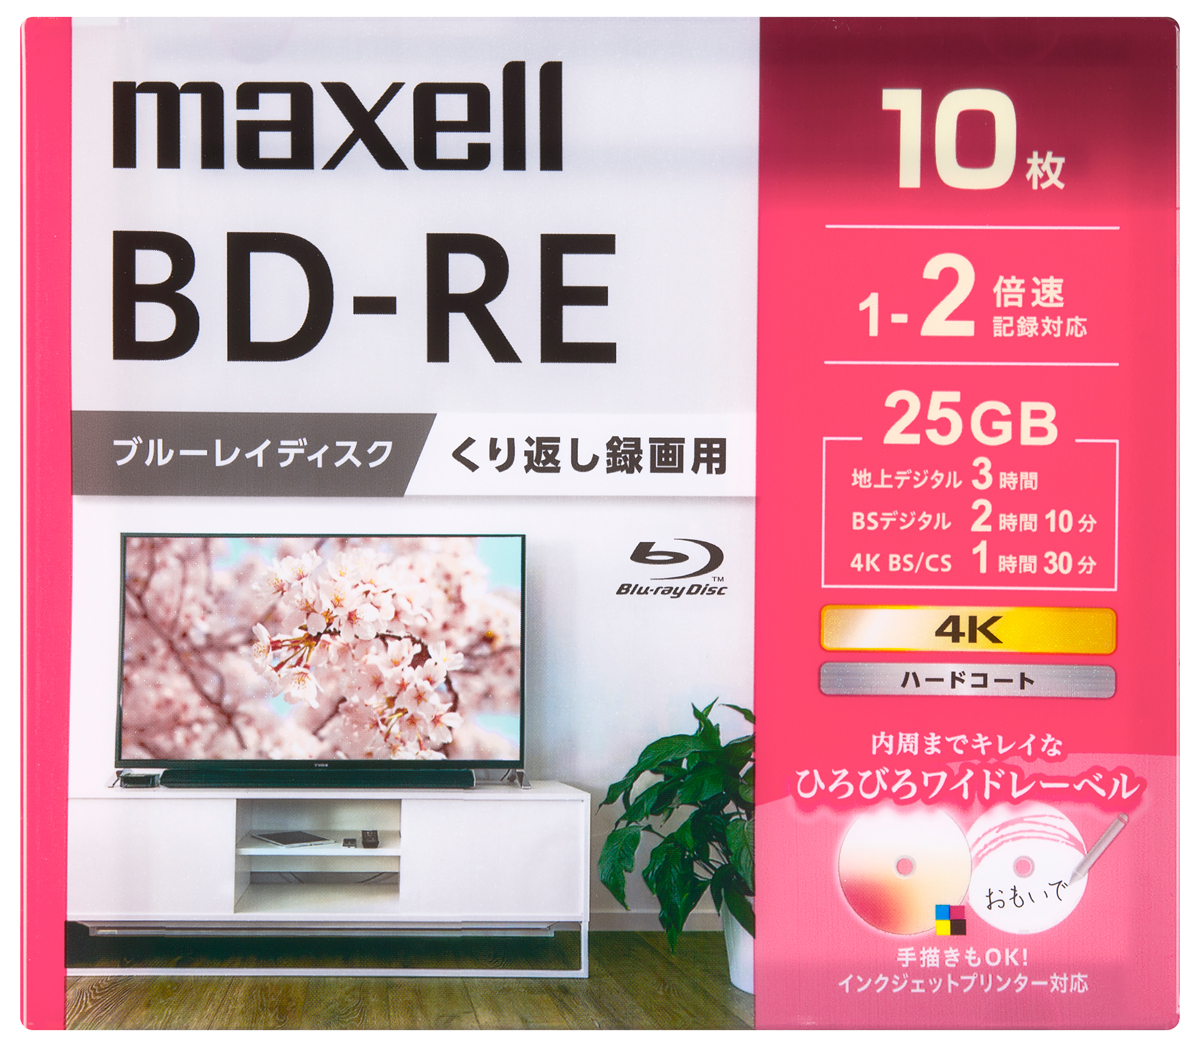 マクセル BEV25WPG10S 2倍速対応BD-RE 10枚パック 25GB ホワイトプリンタブル[BEV25WPG10S] 返品種別A